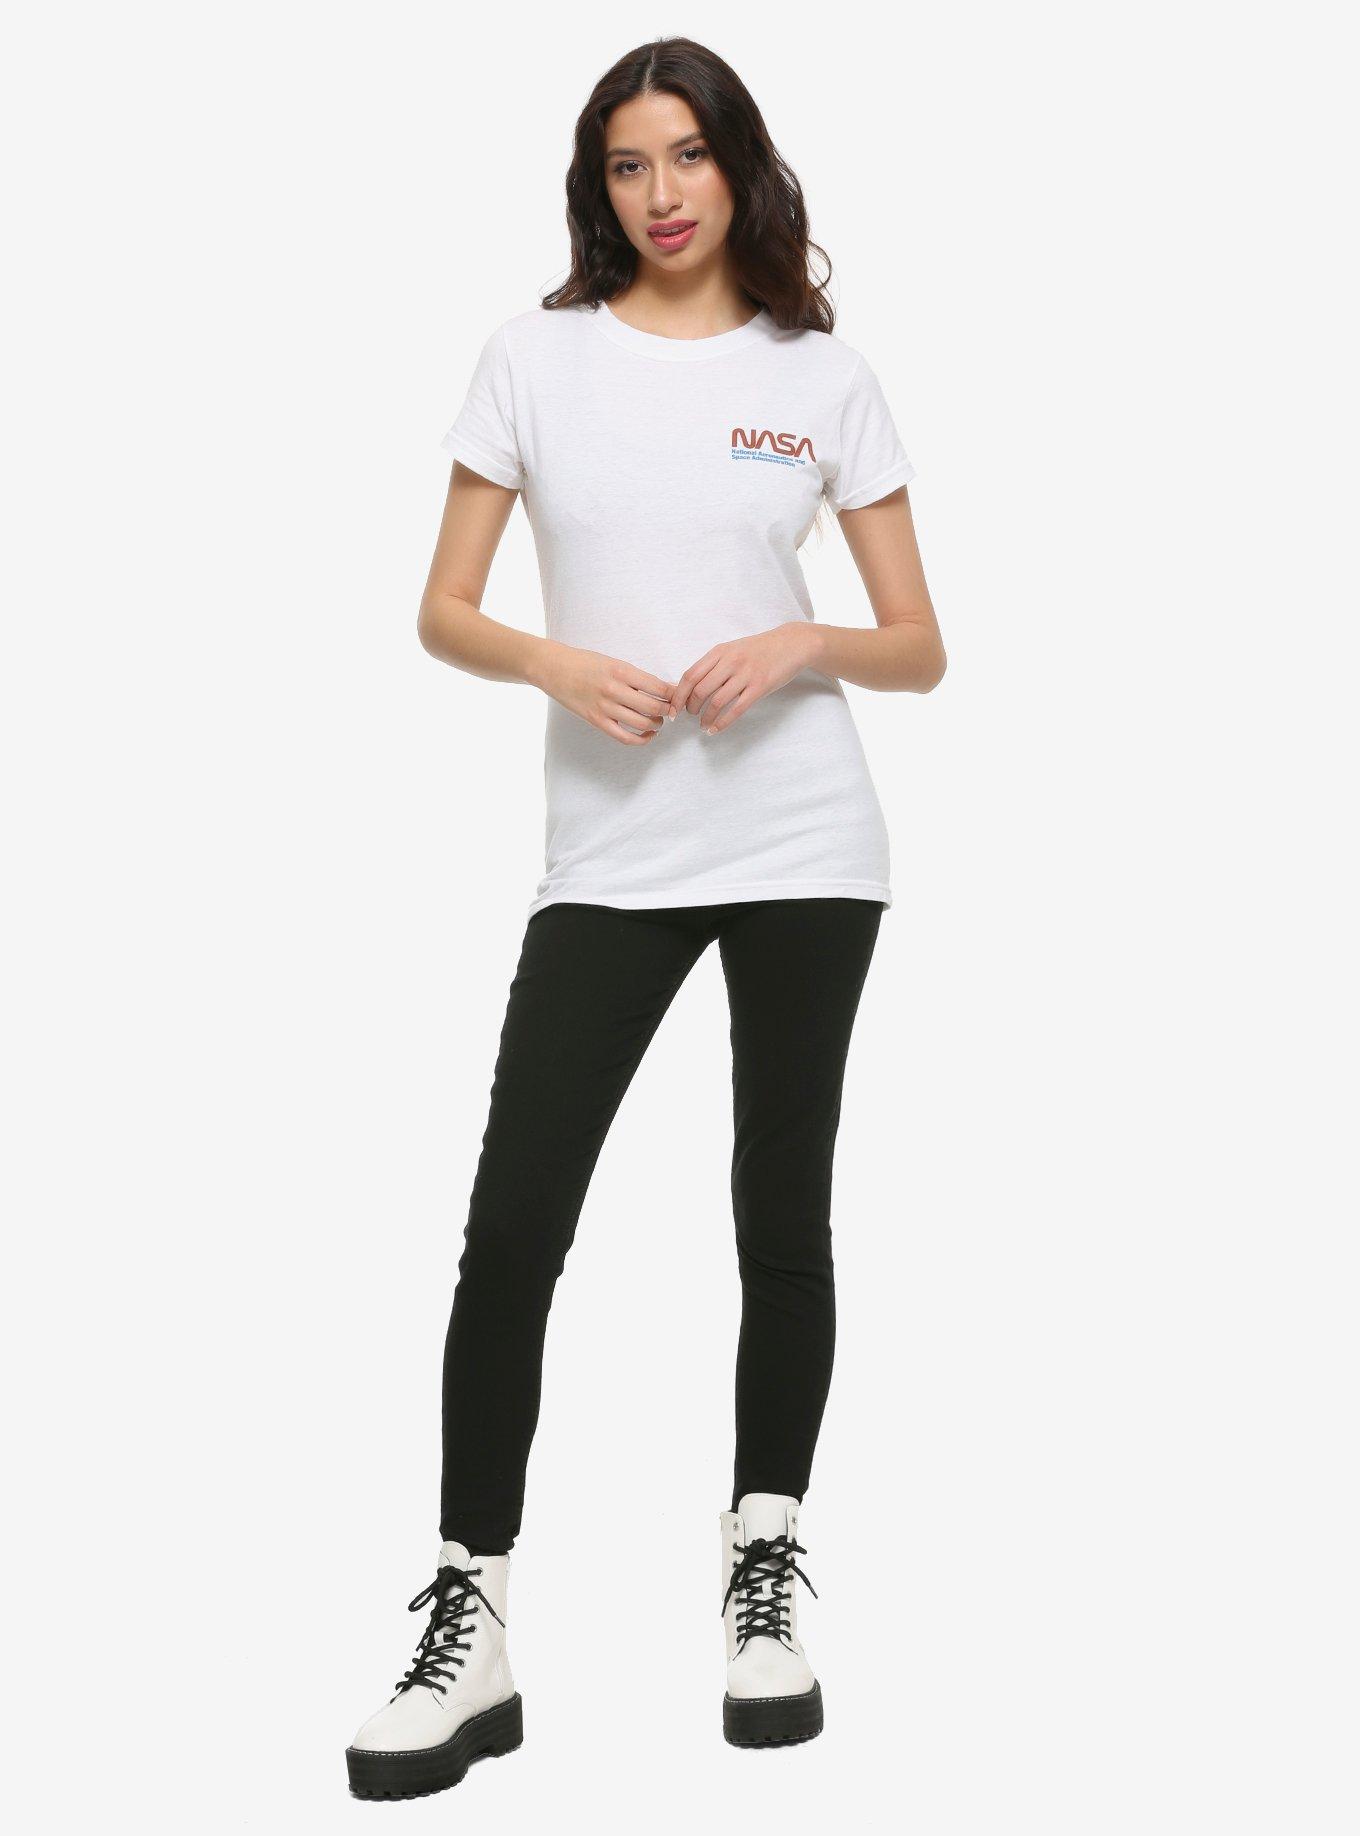 NASA Shuttle Painting Girls T-Shirt, MULTI, alternate